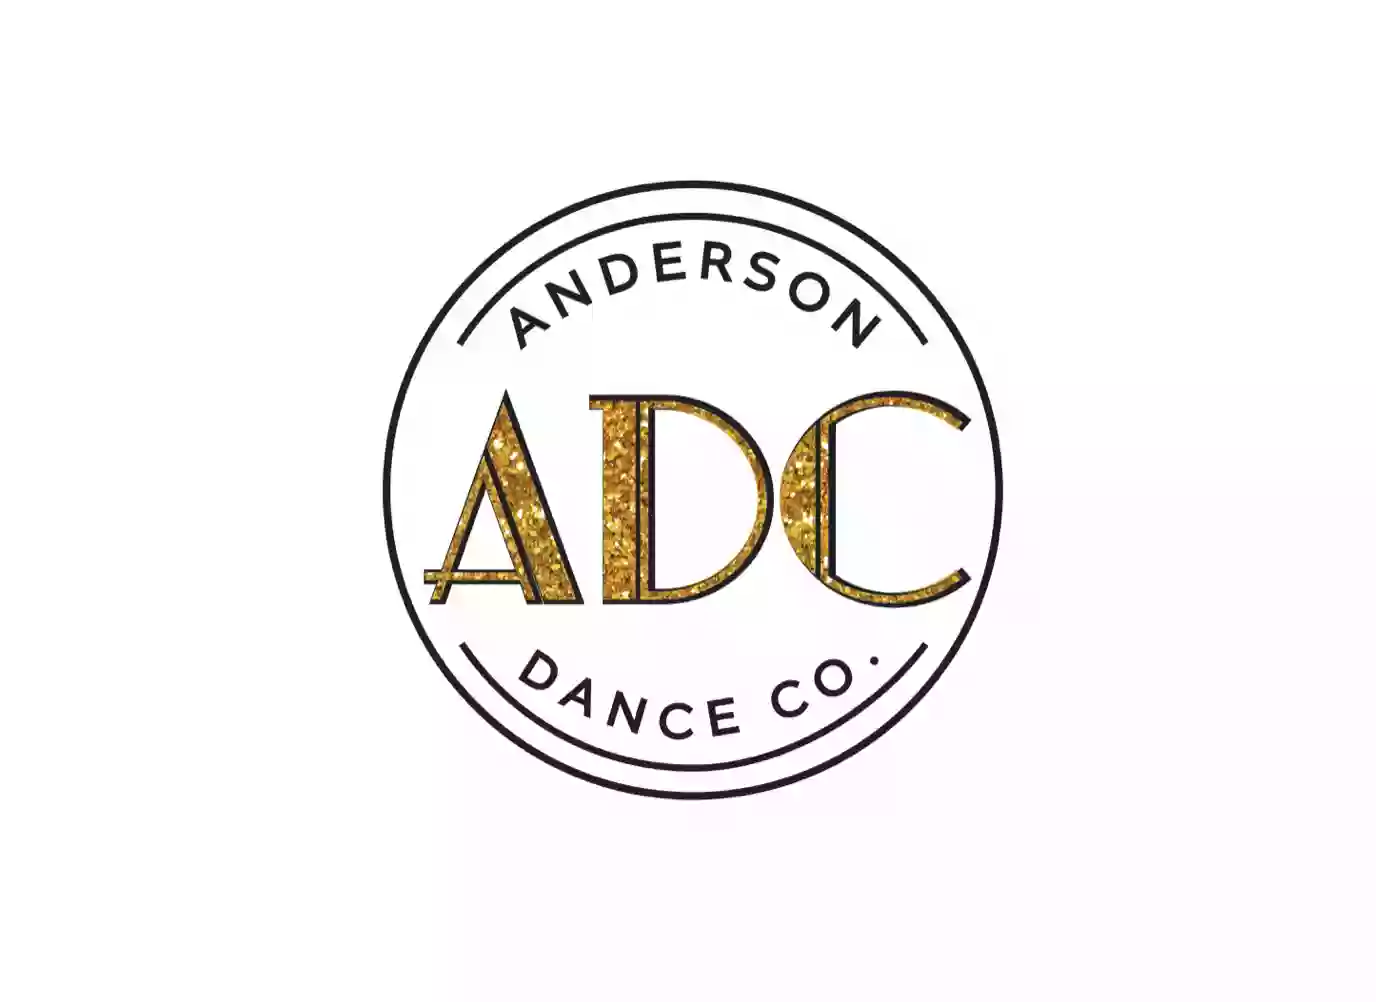 Anderson Dance Company